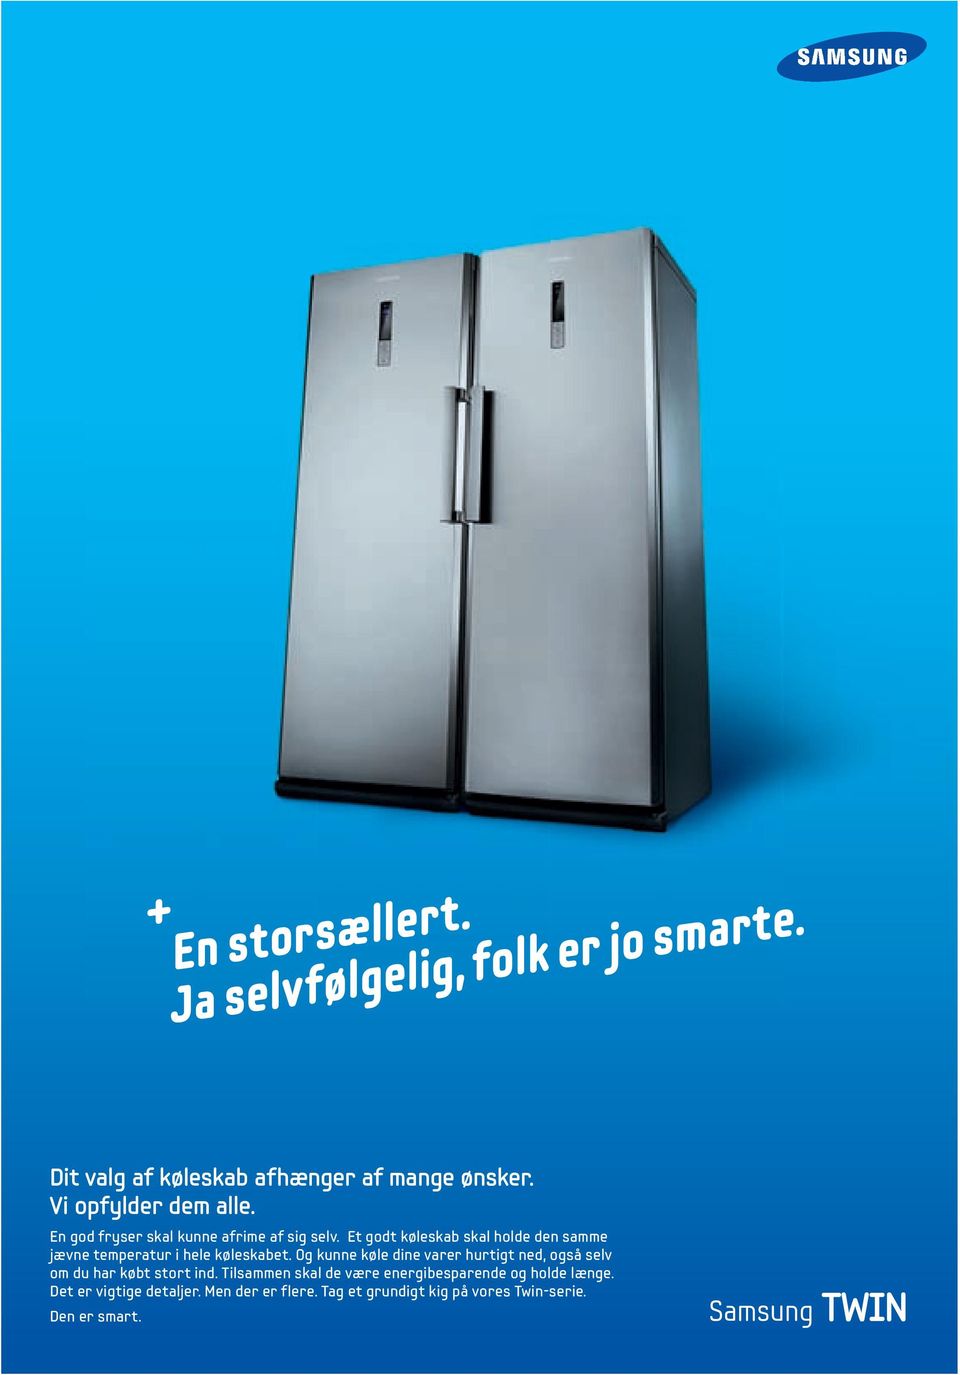 Et godt køleskab skal holde den samme jævne temperatur i hele køleskabet.